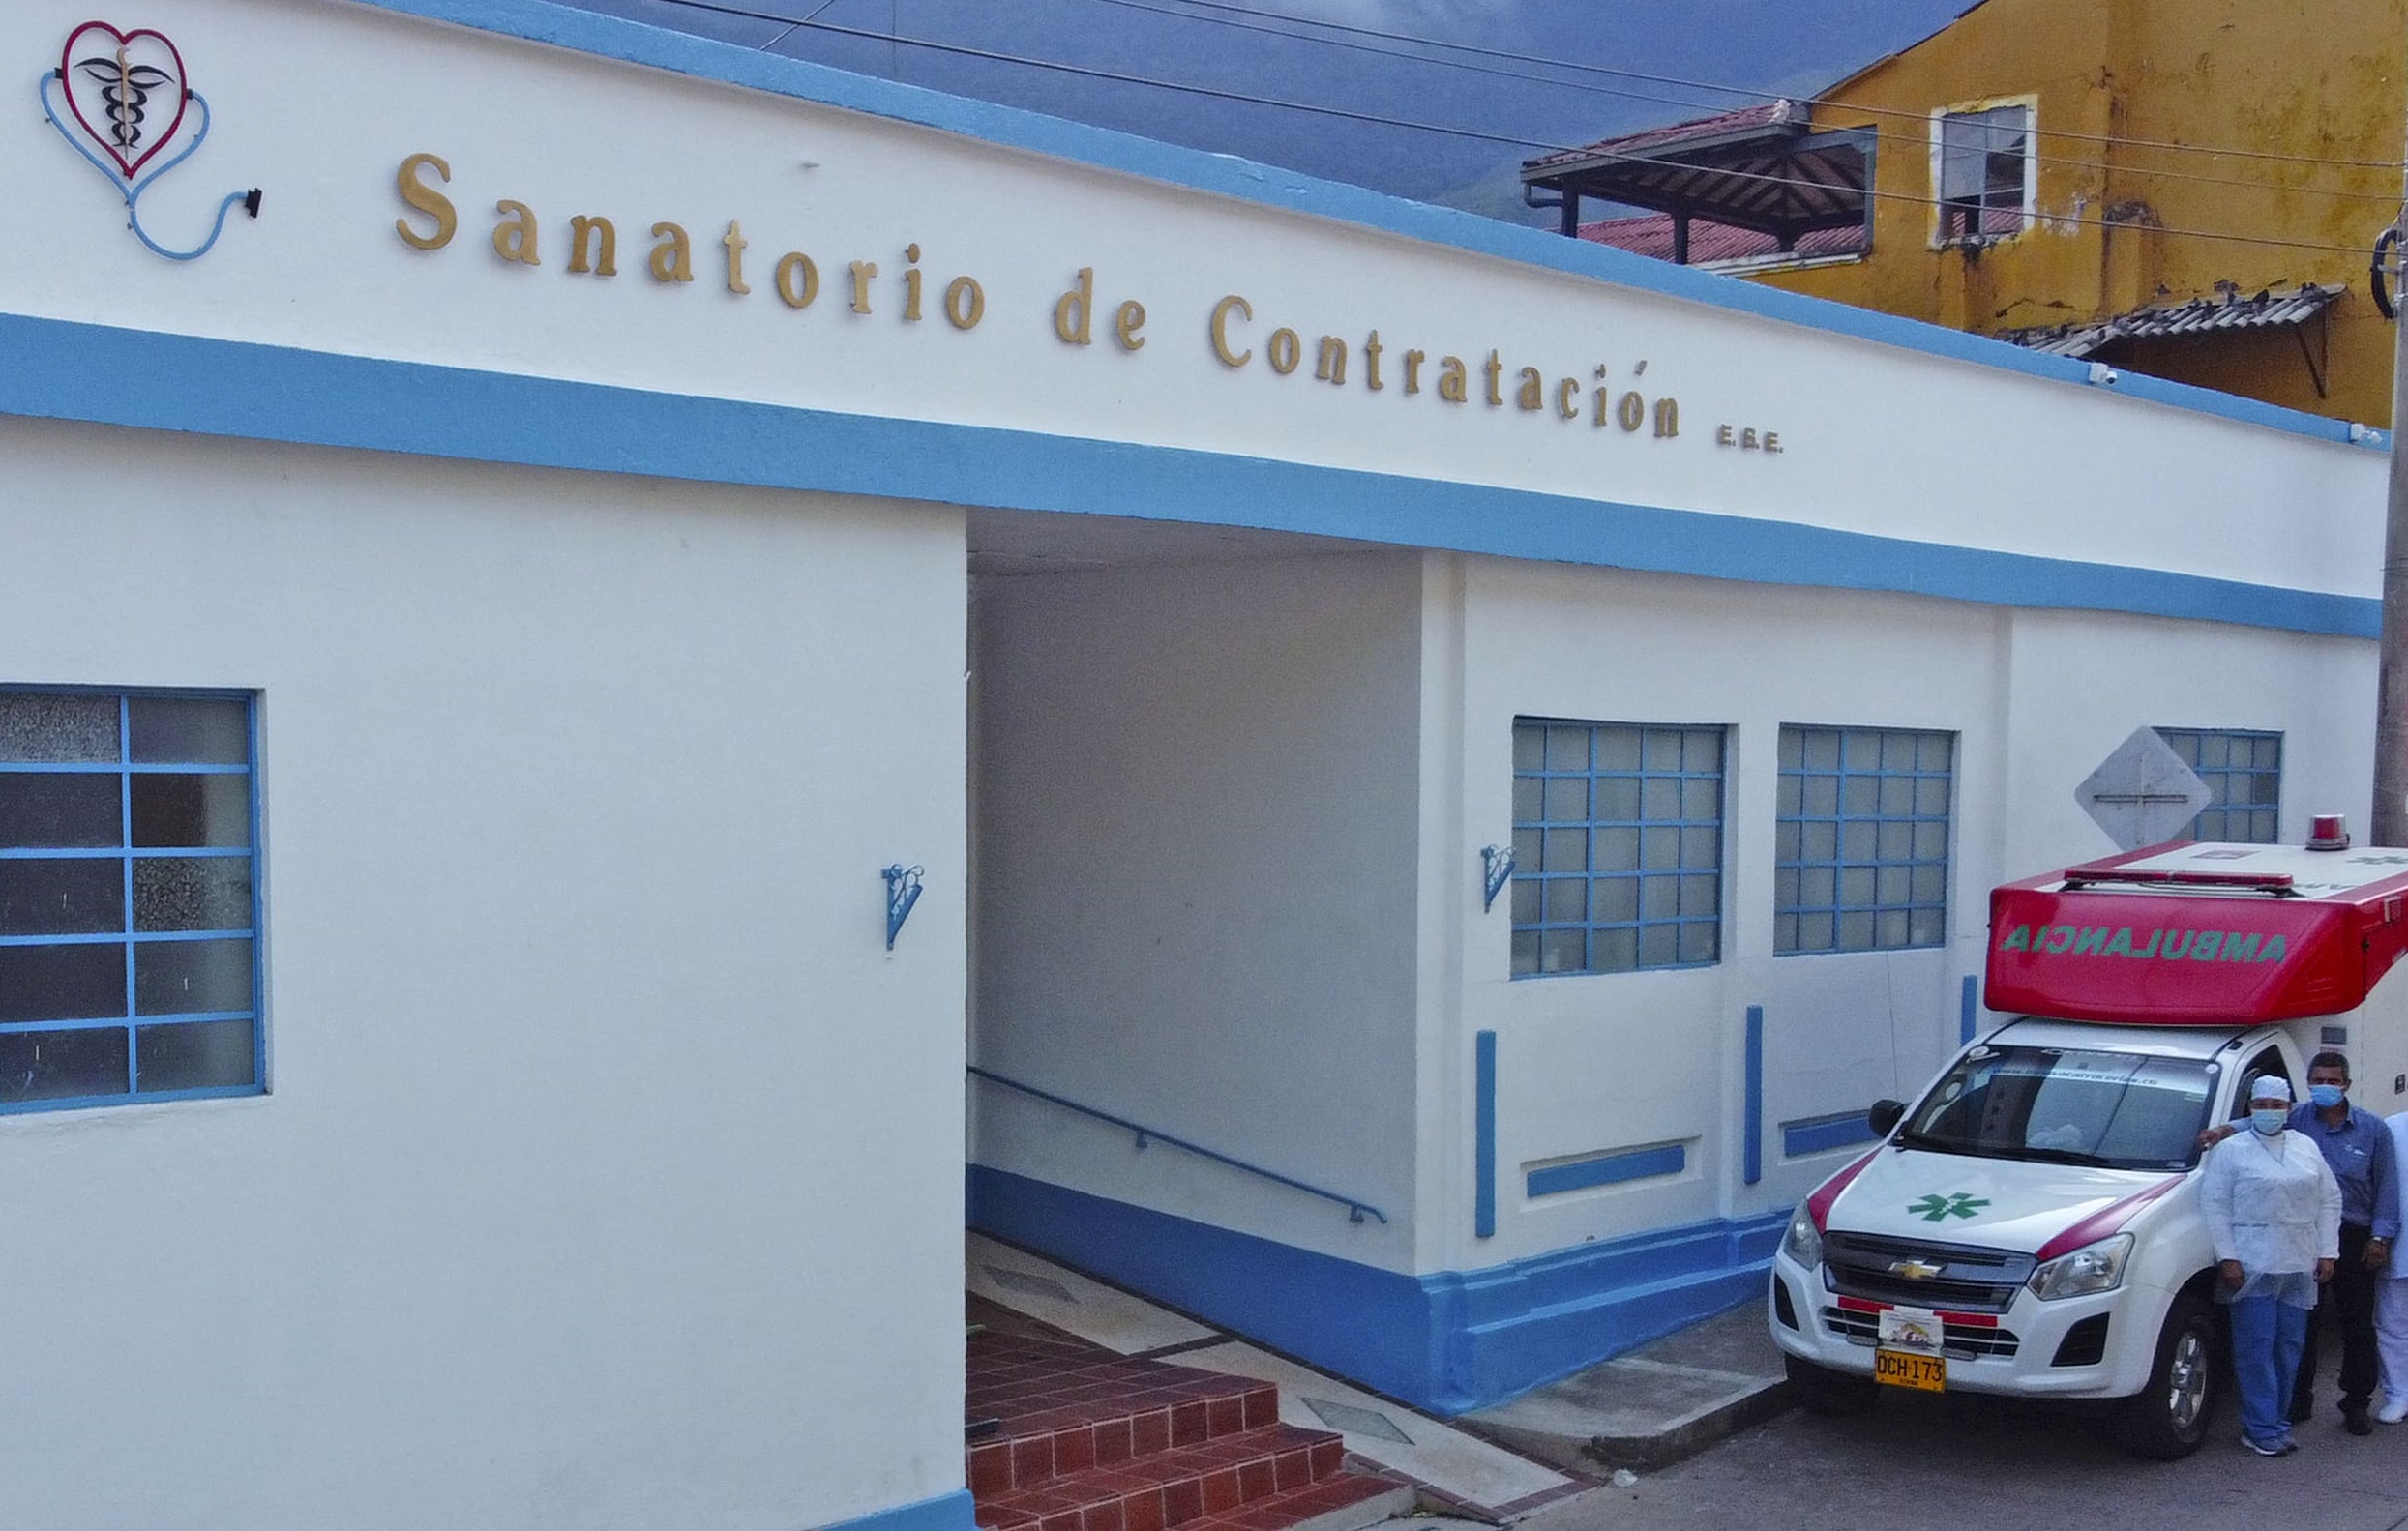 Subsidio enfermedad de Hansen en Sanatorio de Contratación, Santander